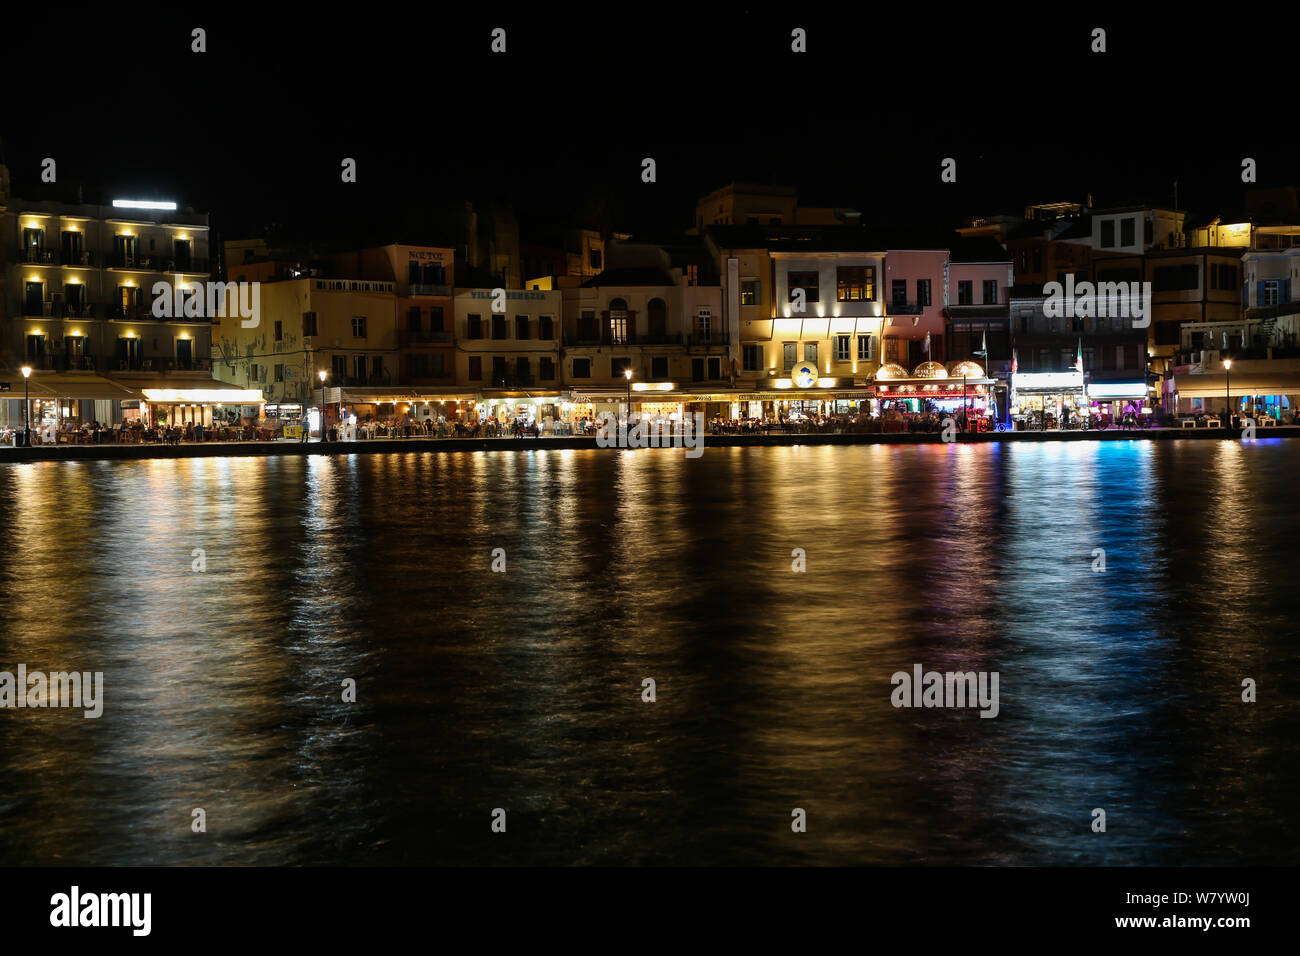 Une vue générale du vieux port vénitien de La Canée, la nuit, dans la ville de Chania, sur l'île grecque de Crète Banque D'Images